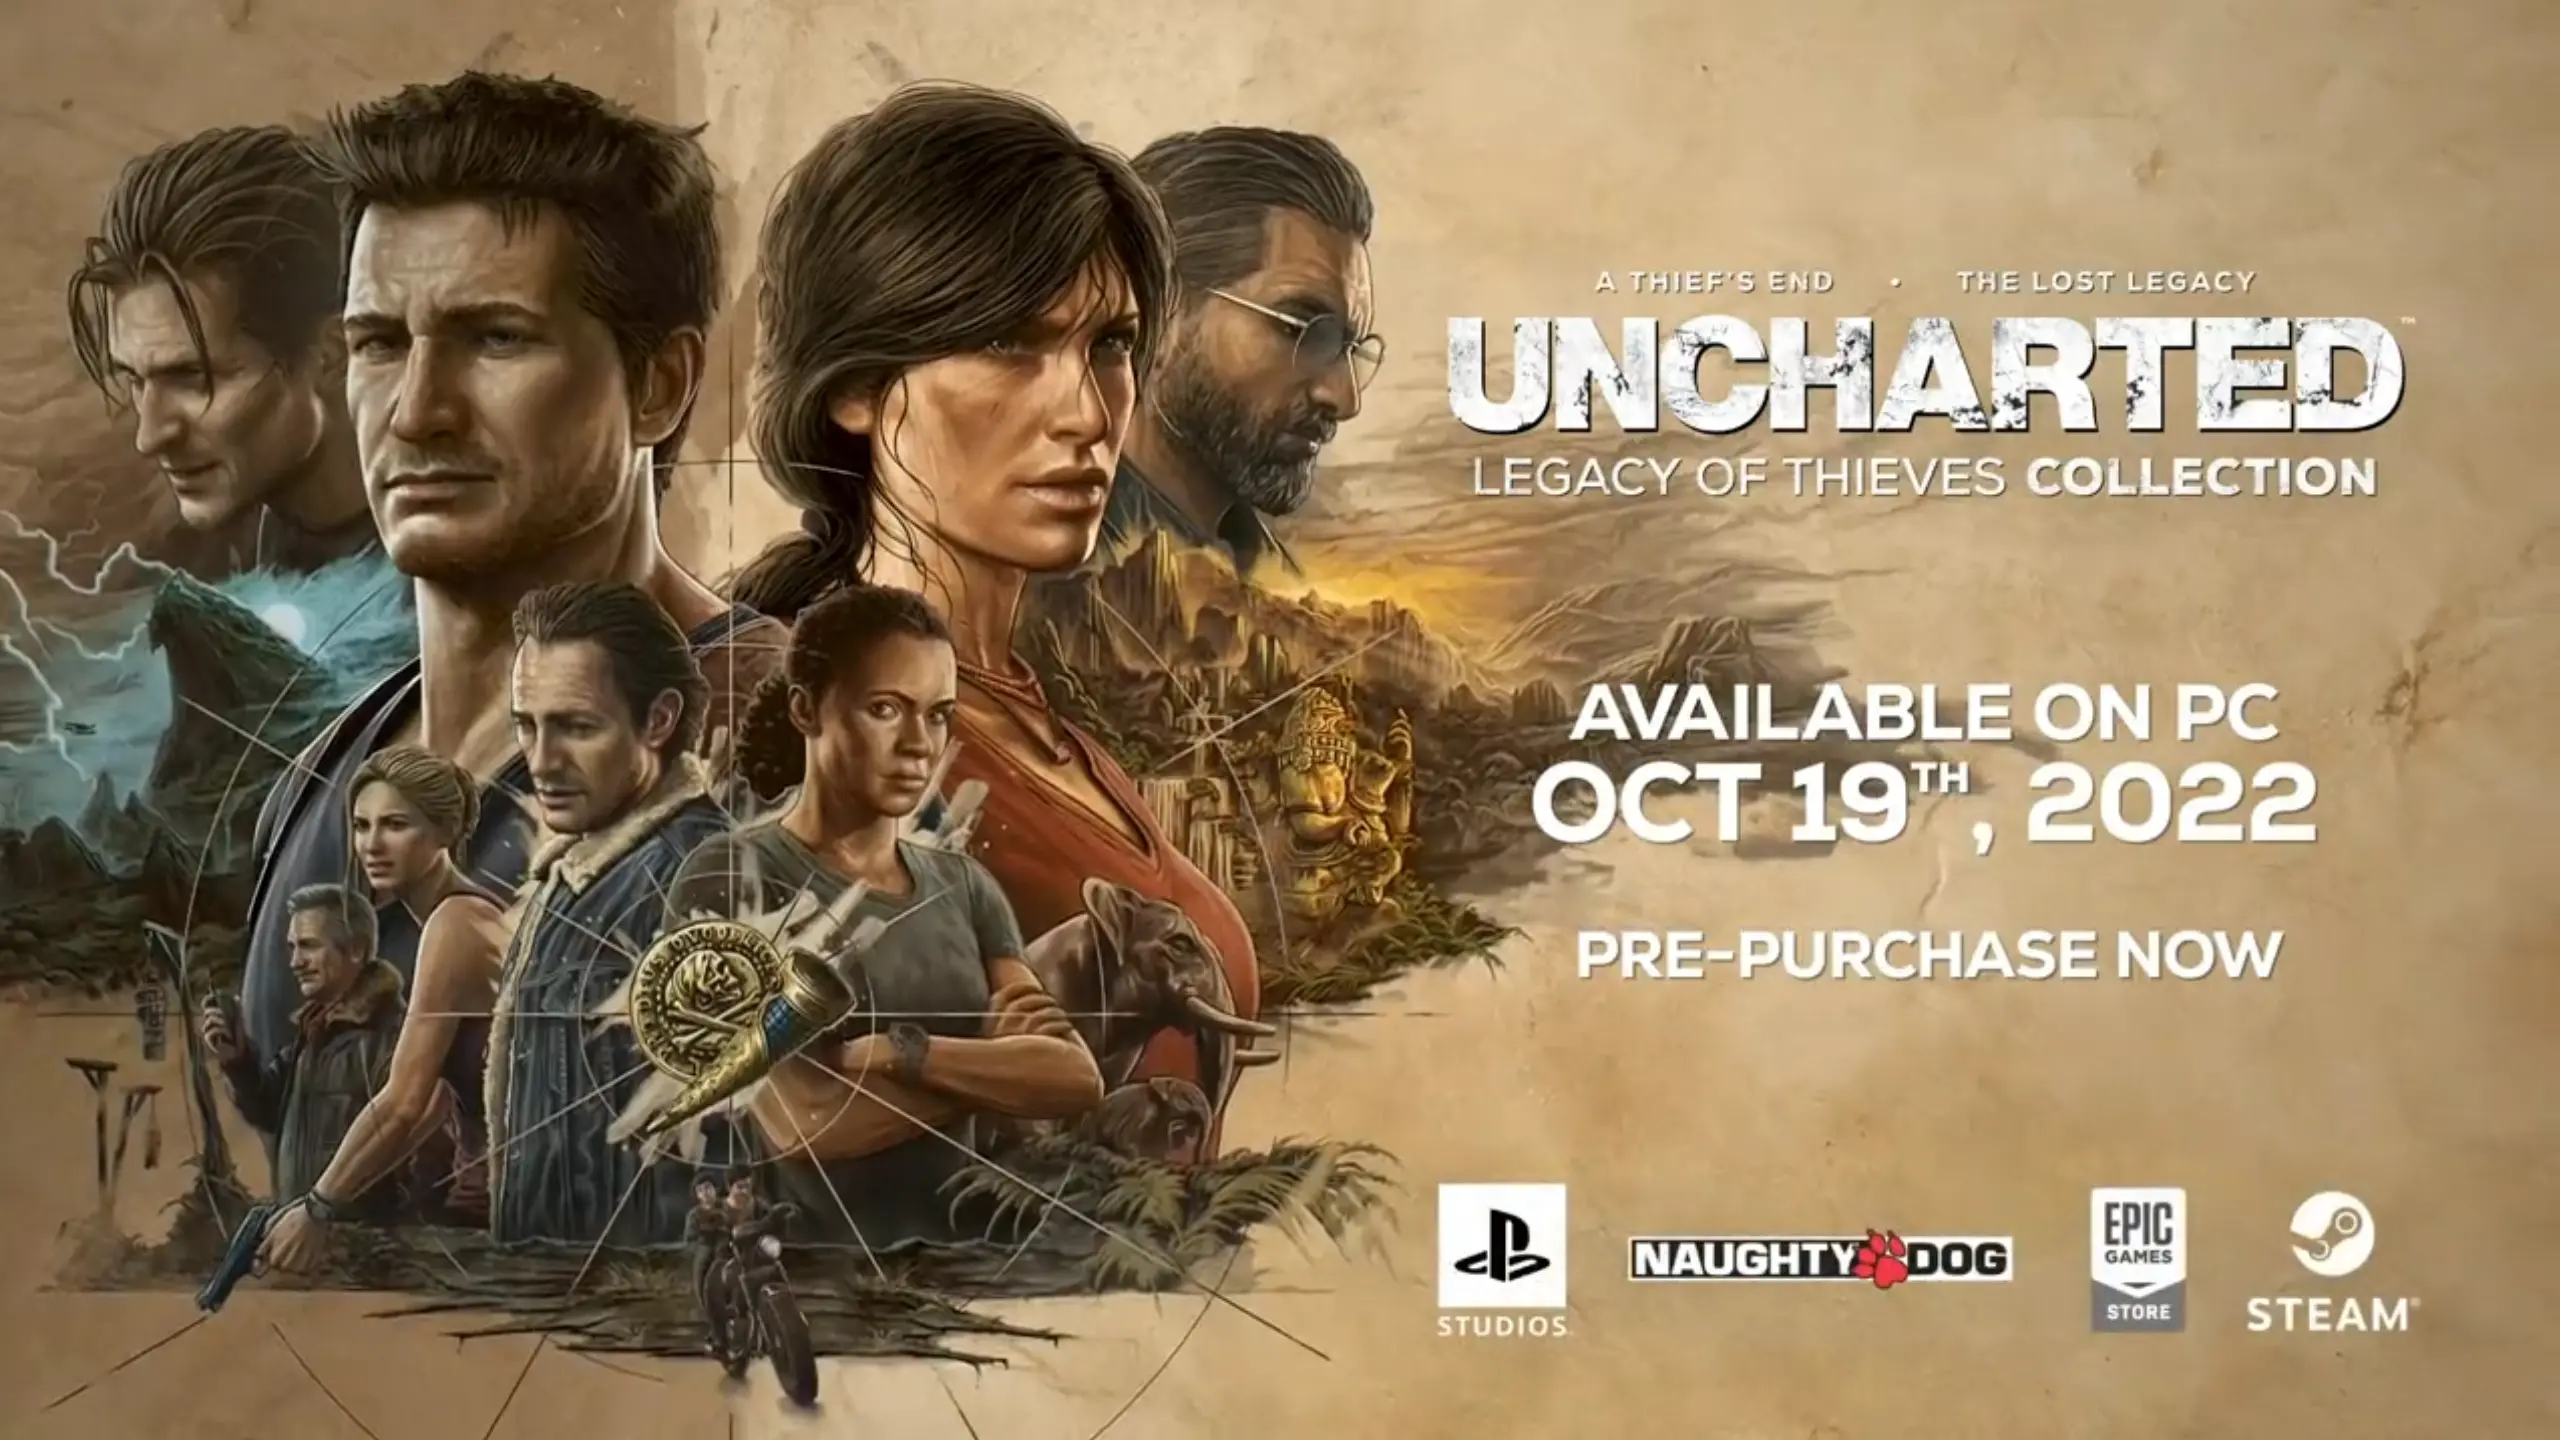 jugar uncharted en pc - Dónde comprar Uncharted 1 para PC